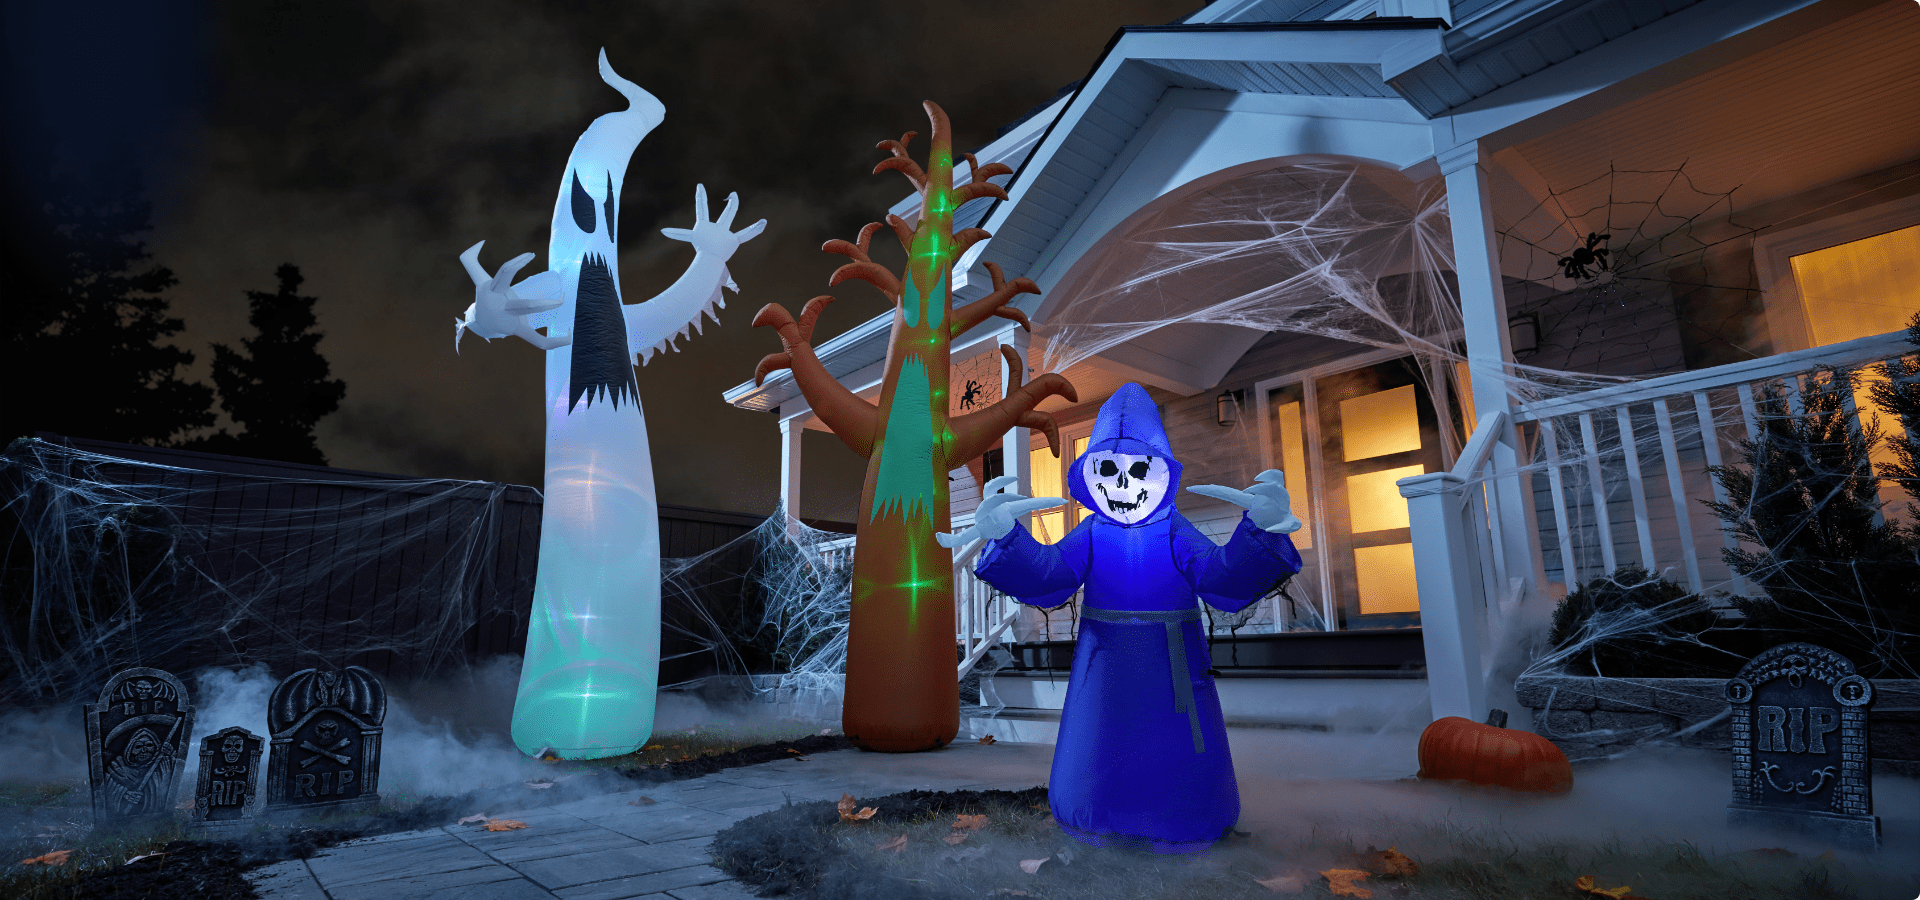  Décorations d’Halloween gonflables effrayantes dans la cour. 